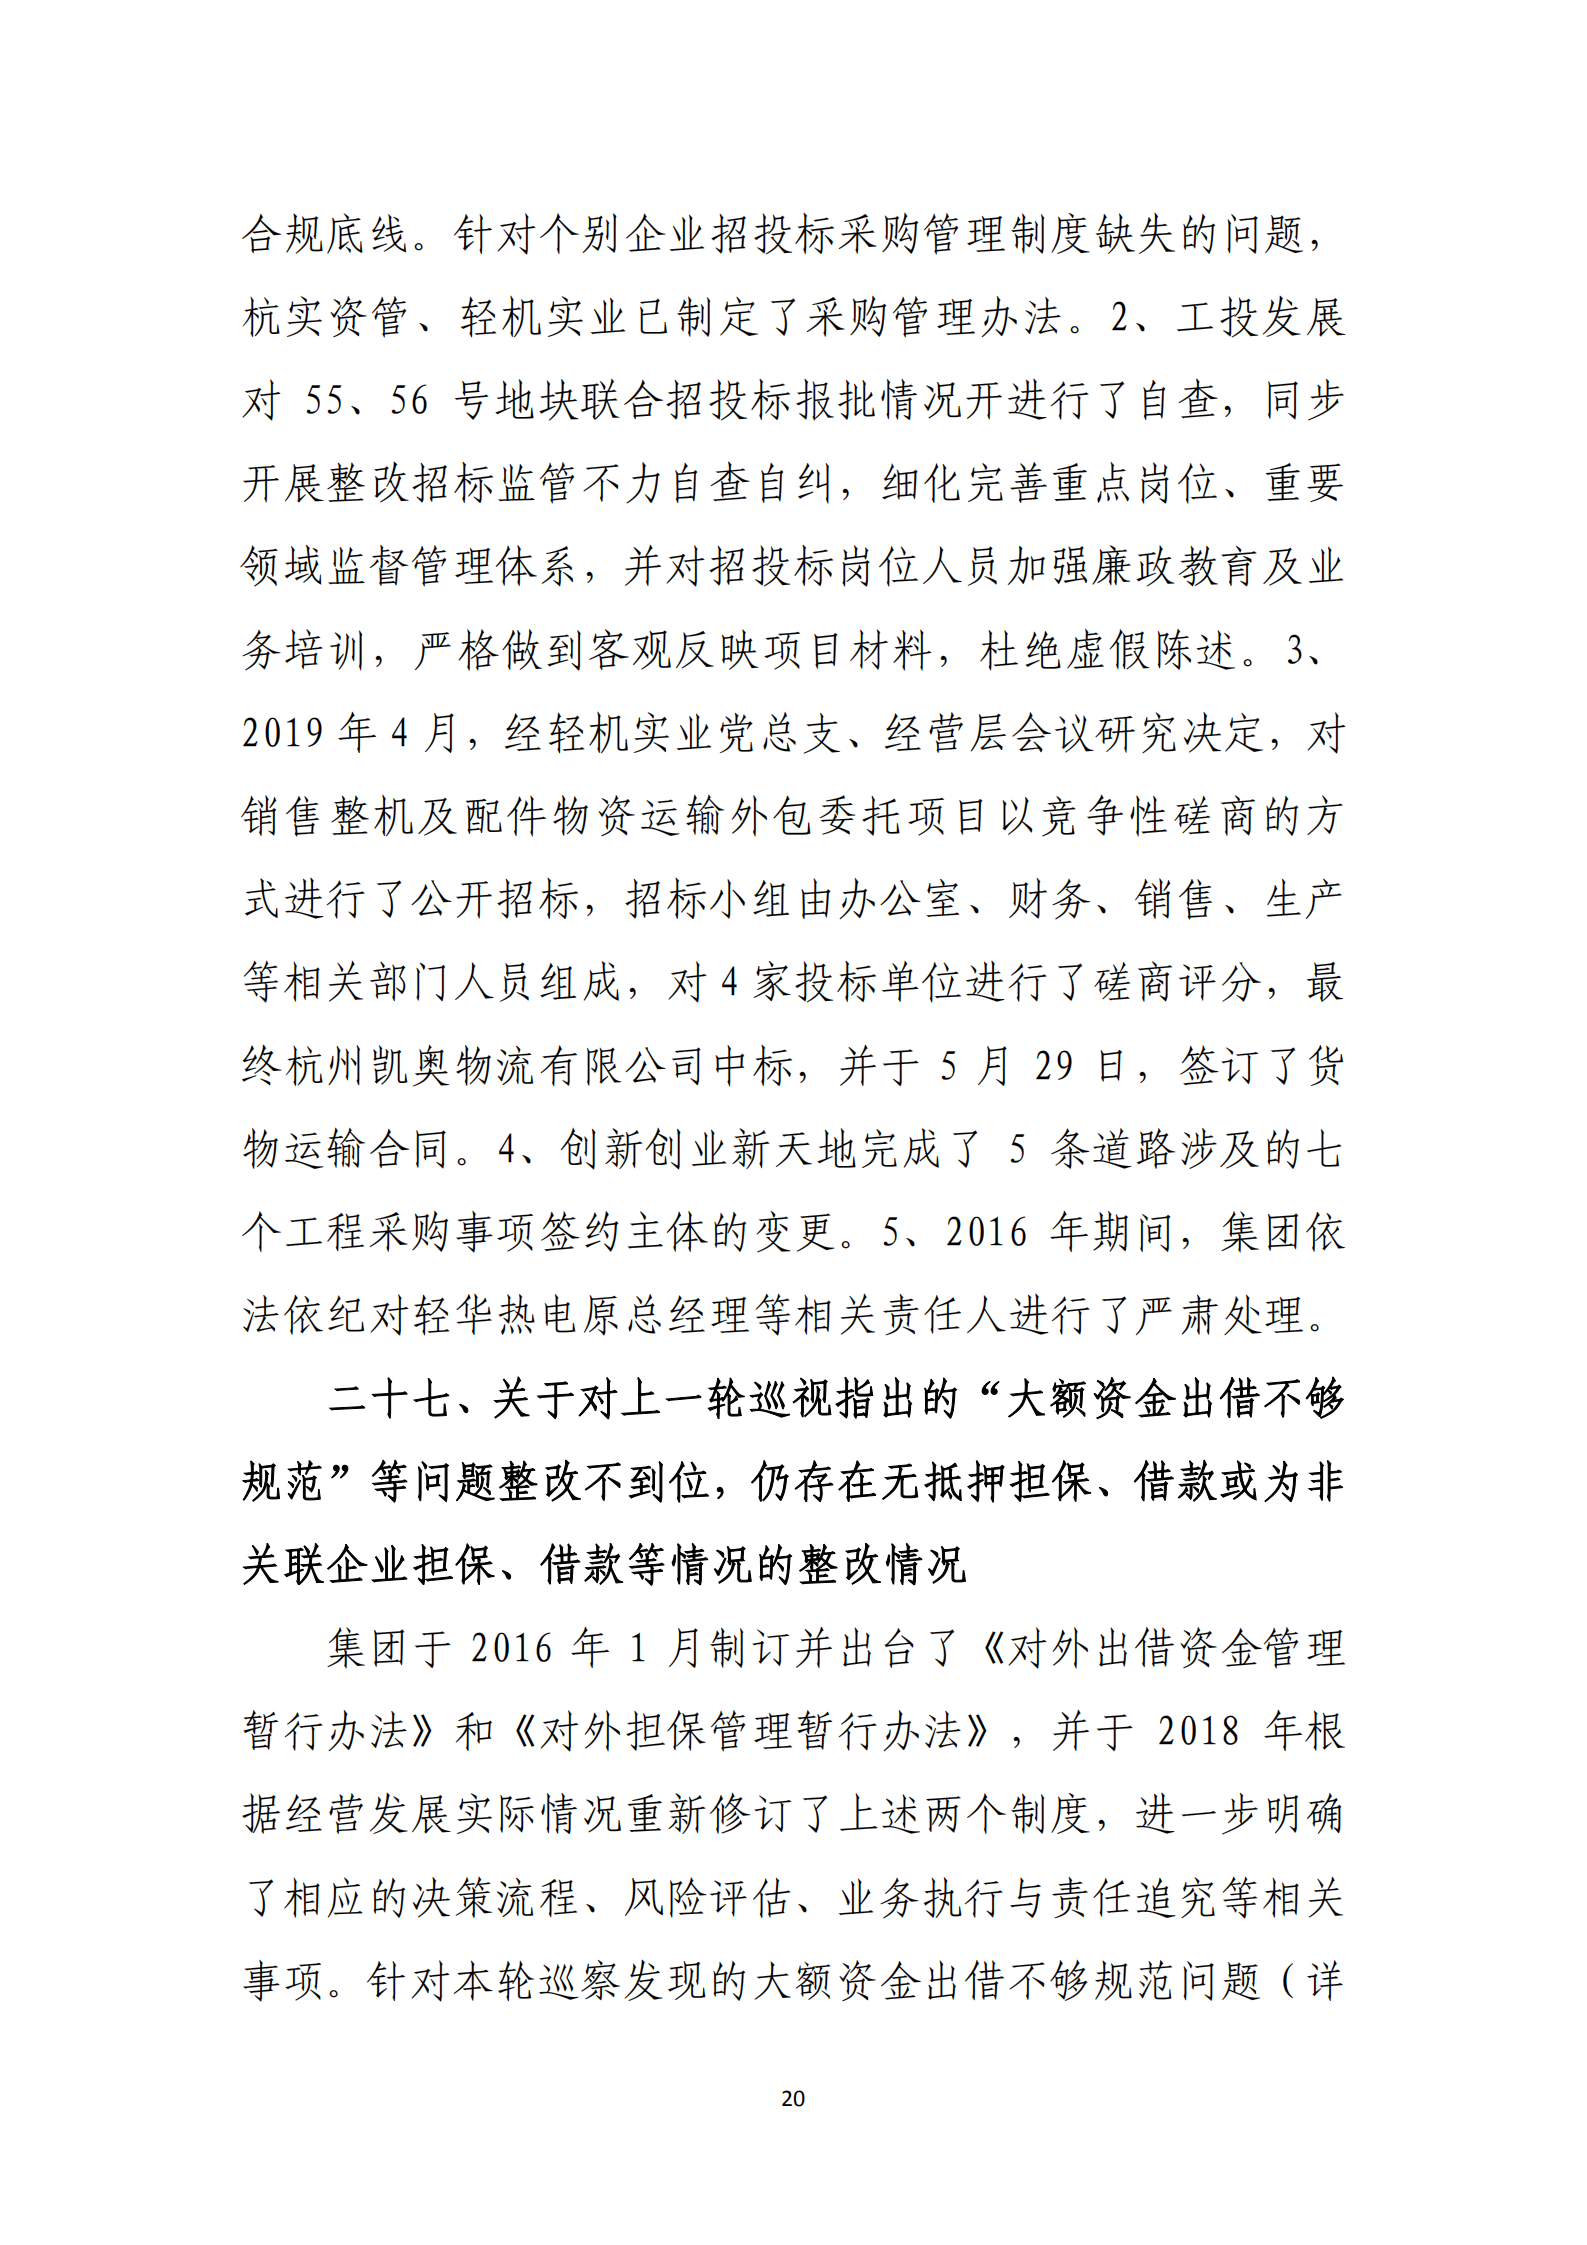 【体育365官方网站】中国有限公司党委关于巡察整改情况的通报_19.png